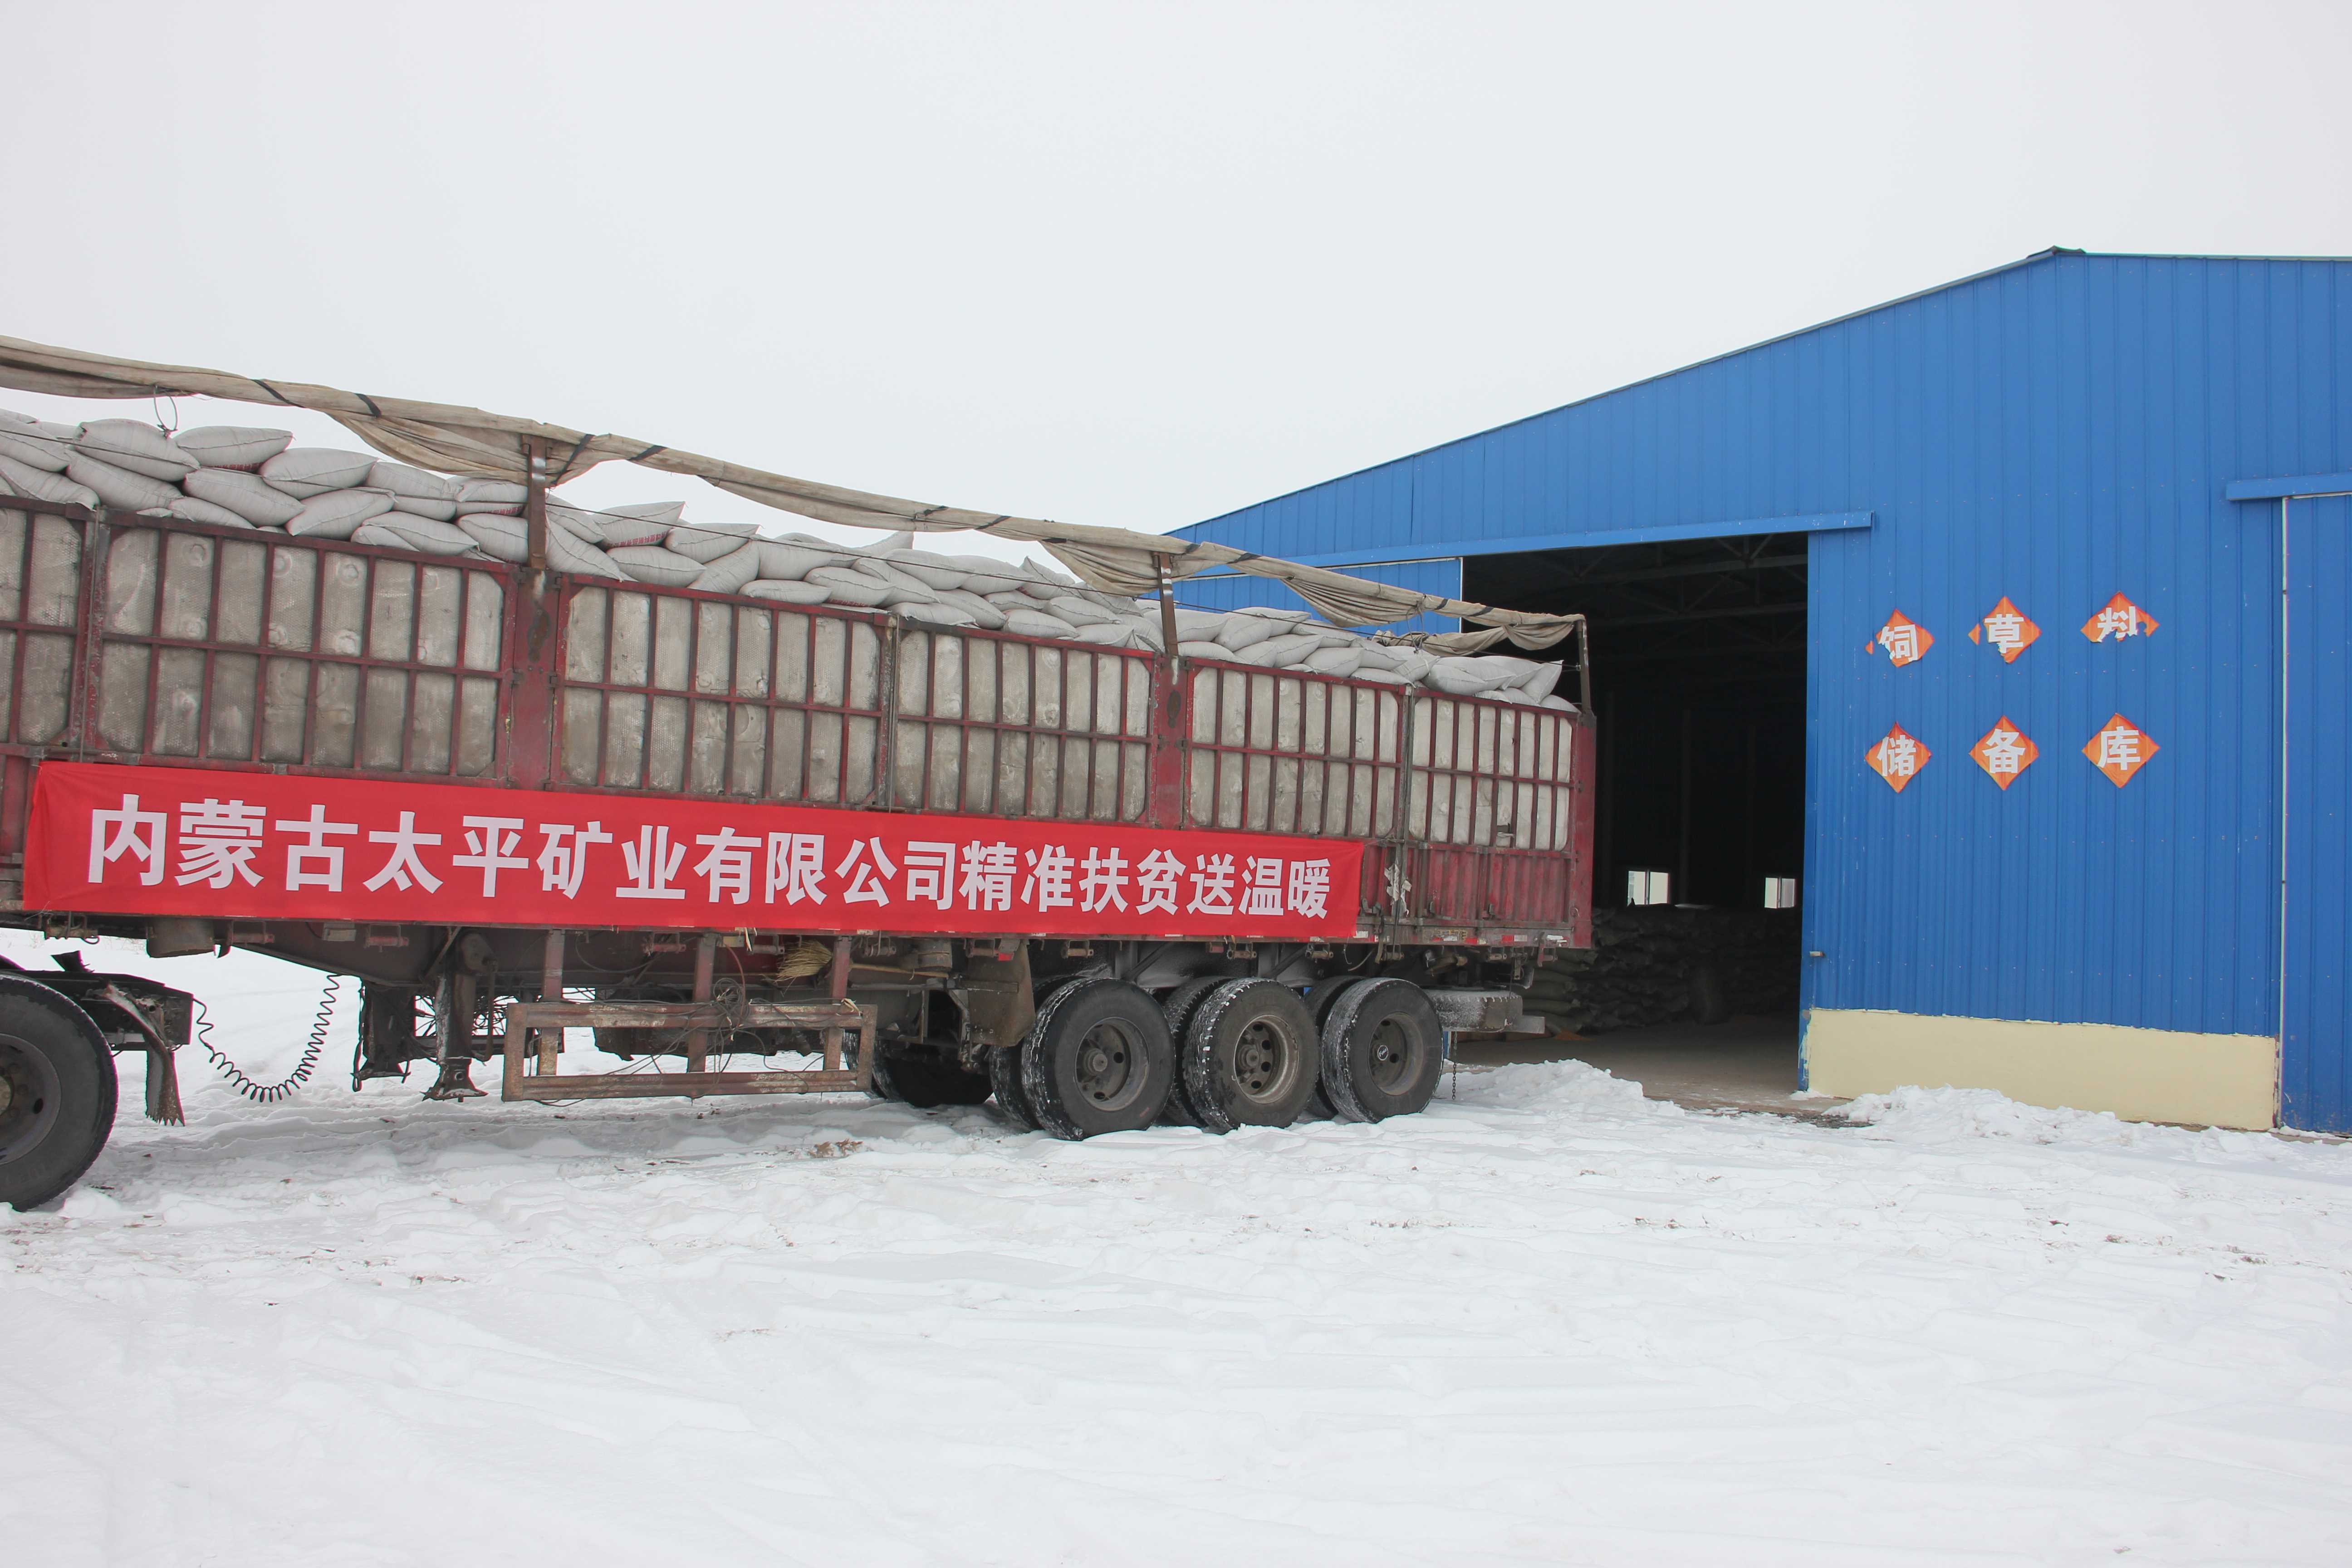 内蒙古太平精准扶贫送温暖-内蒙古太平矿业有限公司急牧民之所急，义不容辞践行精准扶贫送温暖行动。